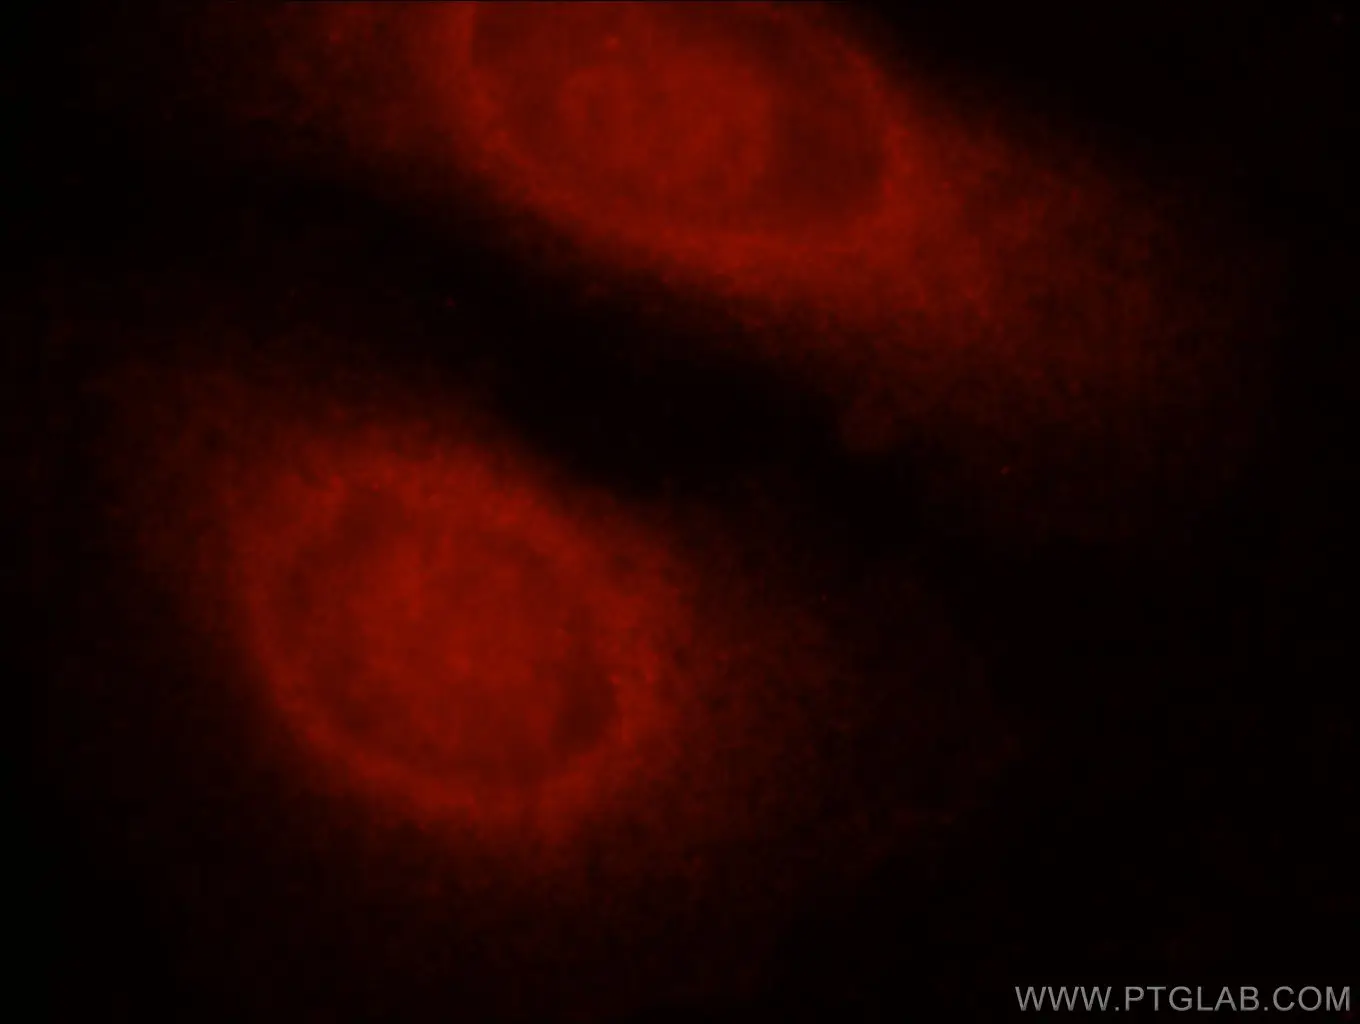 Immunofluorescent analysis of HepG2 cells using Caspase 8 antibody